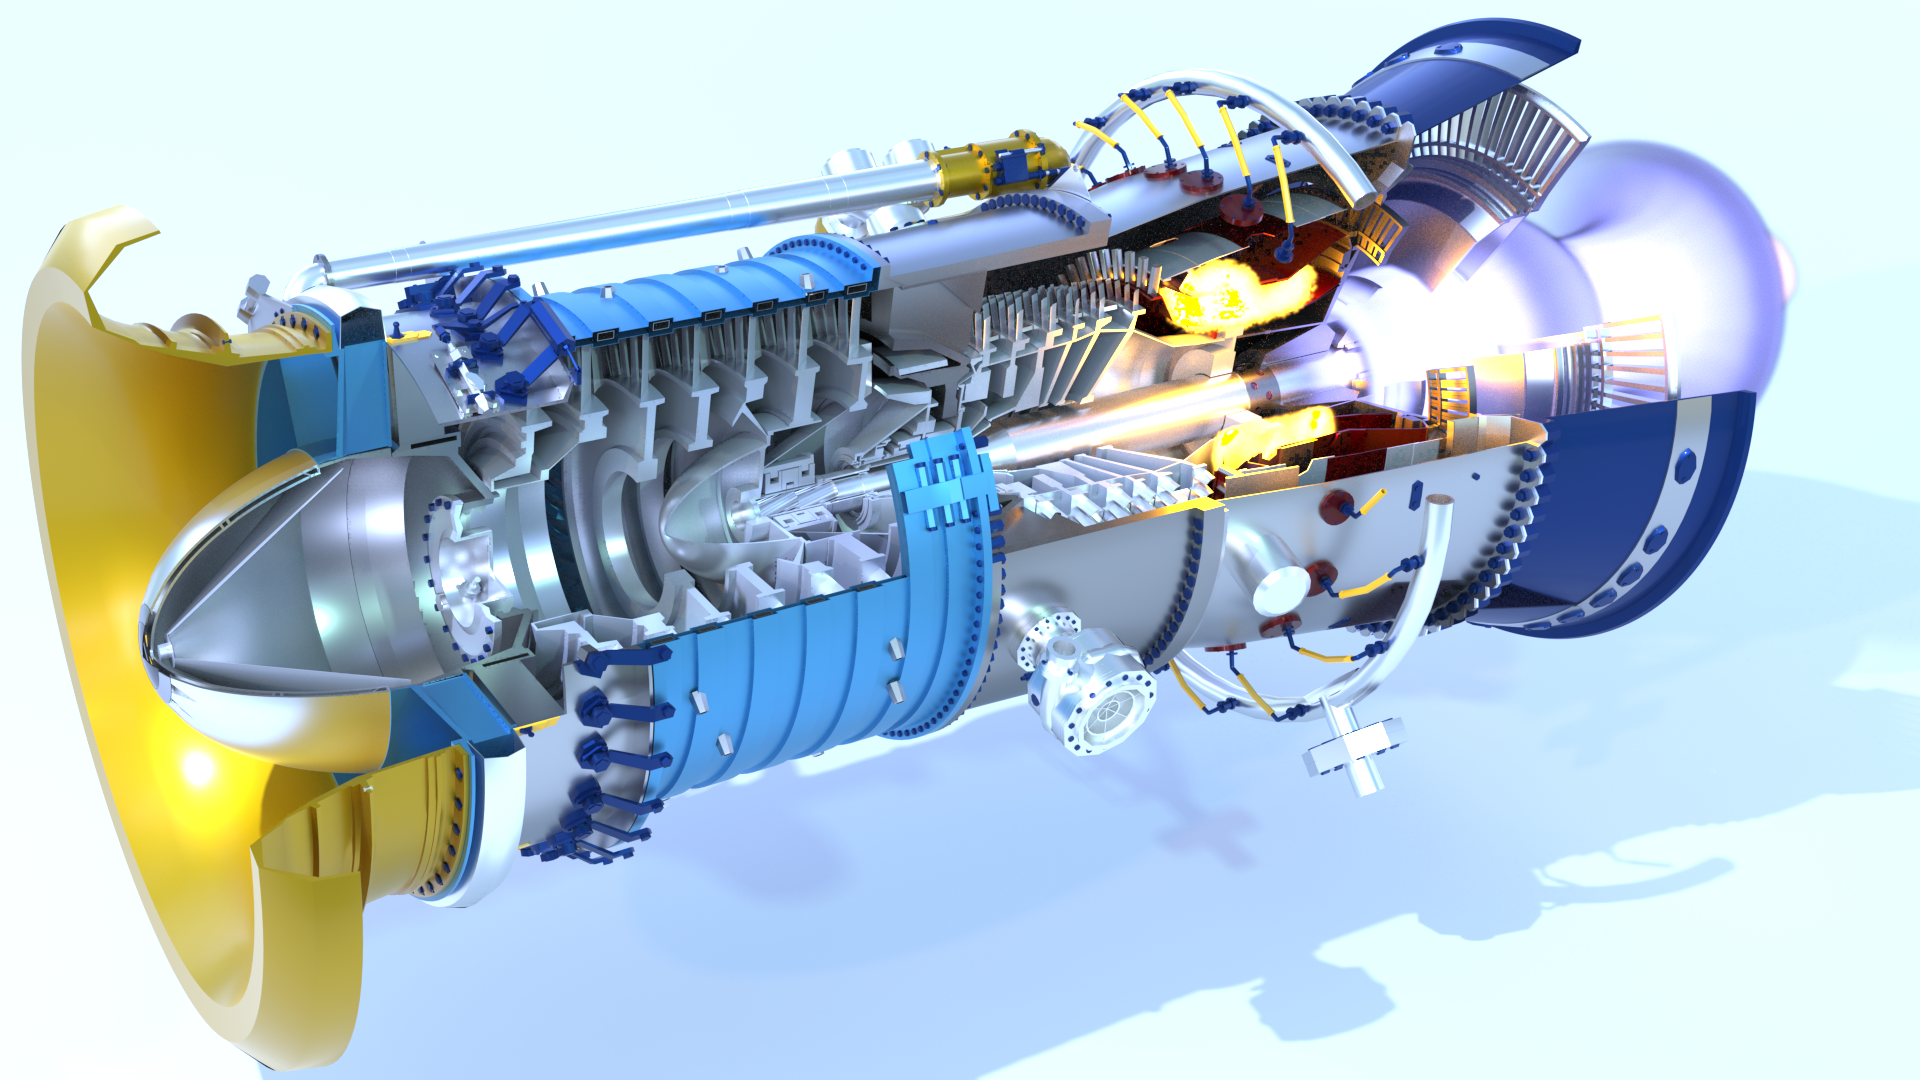 Авиадвигатели пд. Турбореактивный двухконтурный двигатель hf118. Газовая турбина дг90. Ротор турбореактивного двигателя. Турбина ГТД-110м.